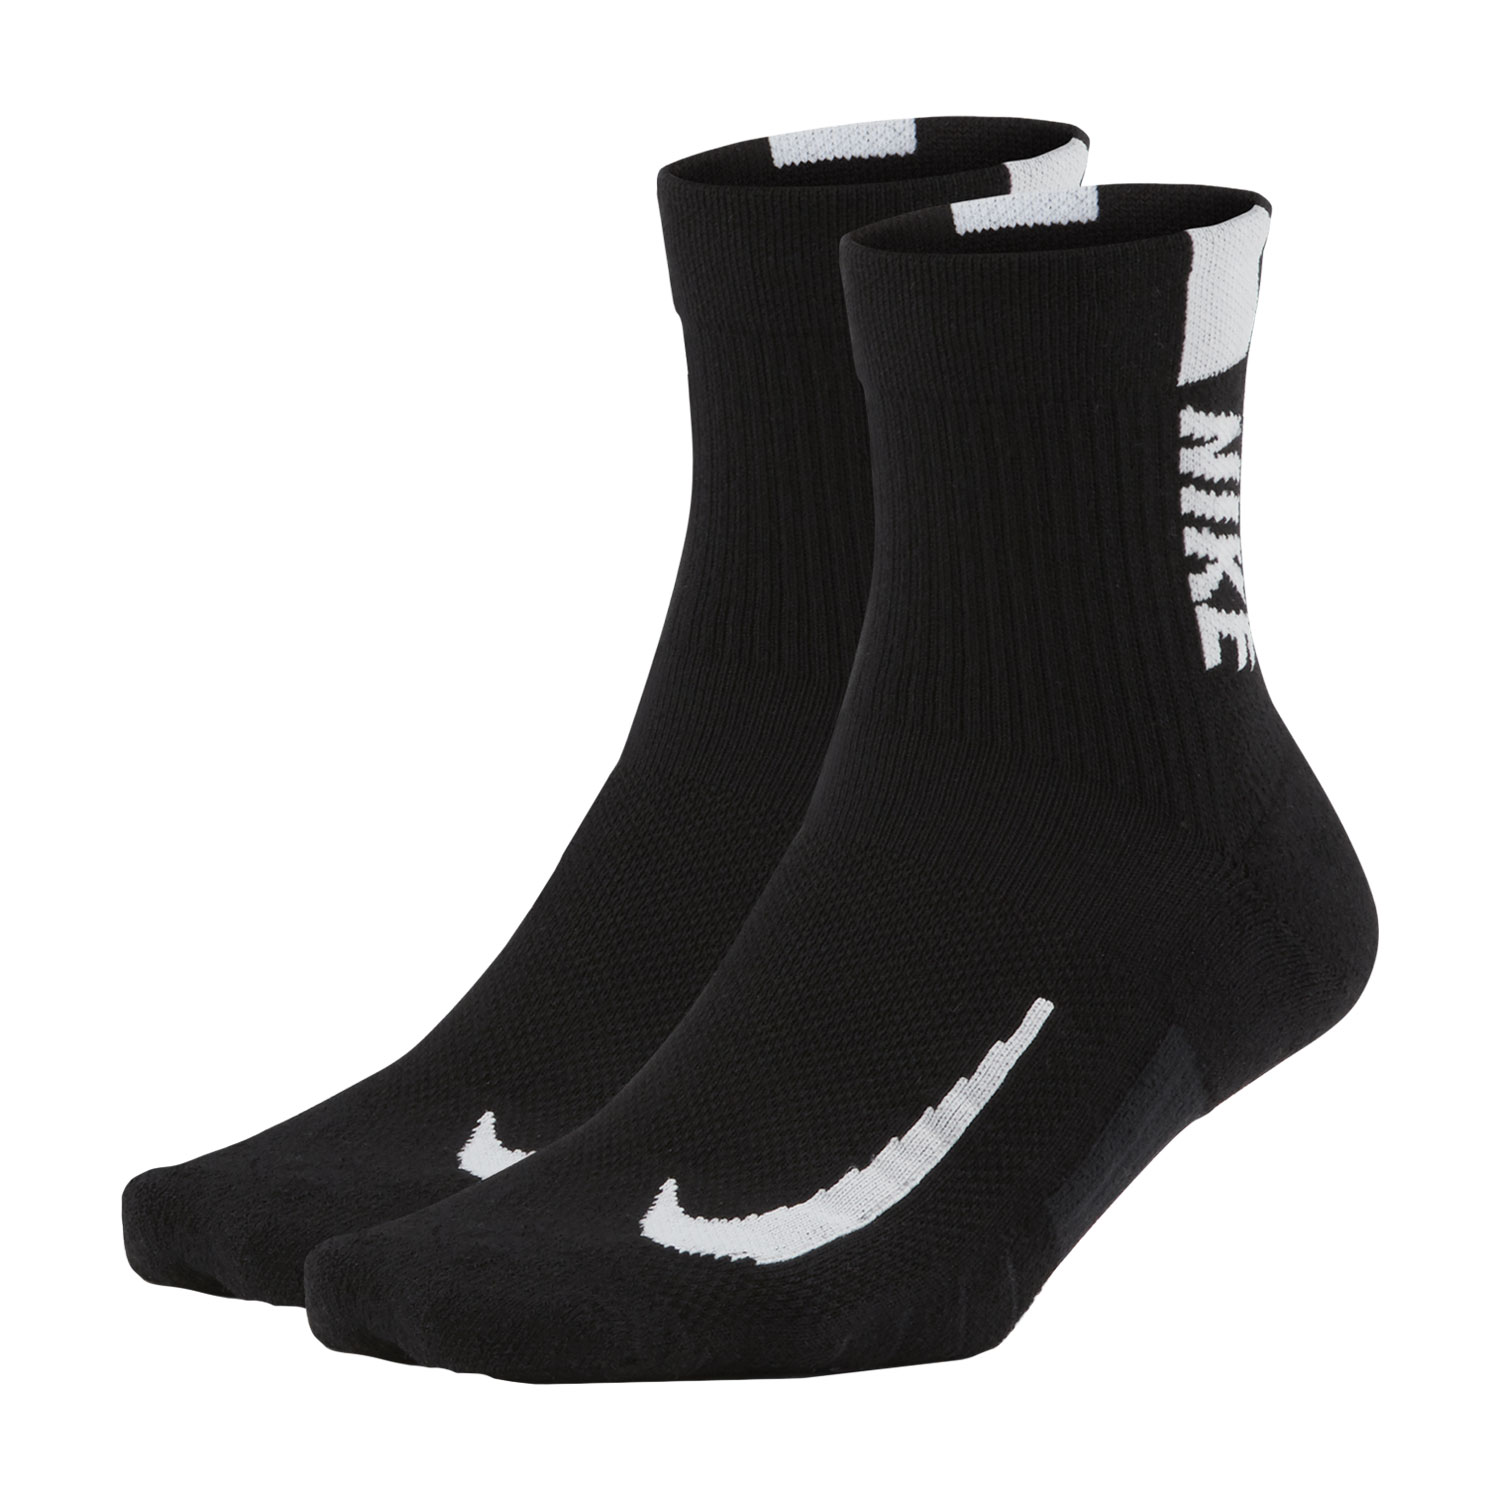 Nike Multiplier x 2 Running Socks - Black/White